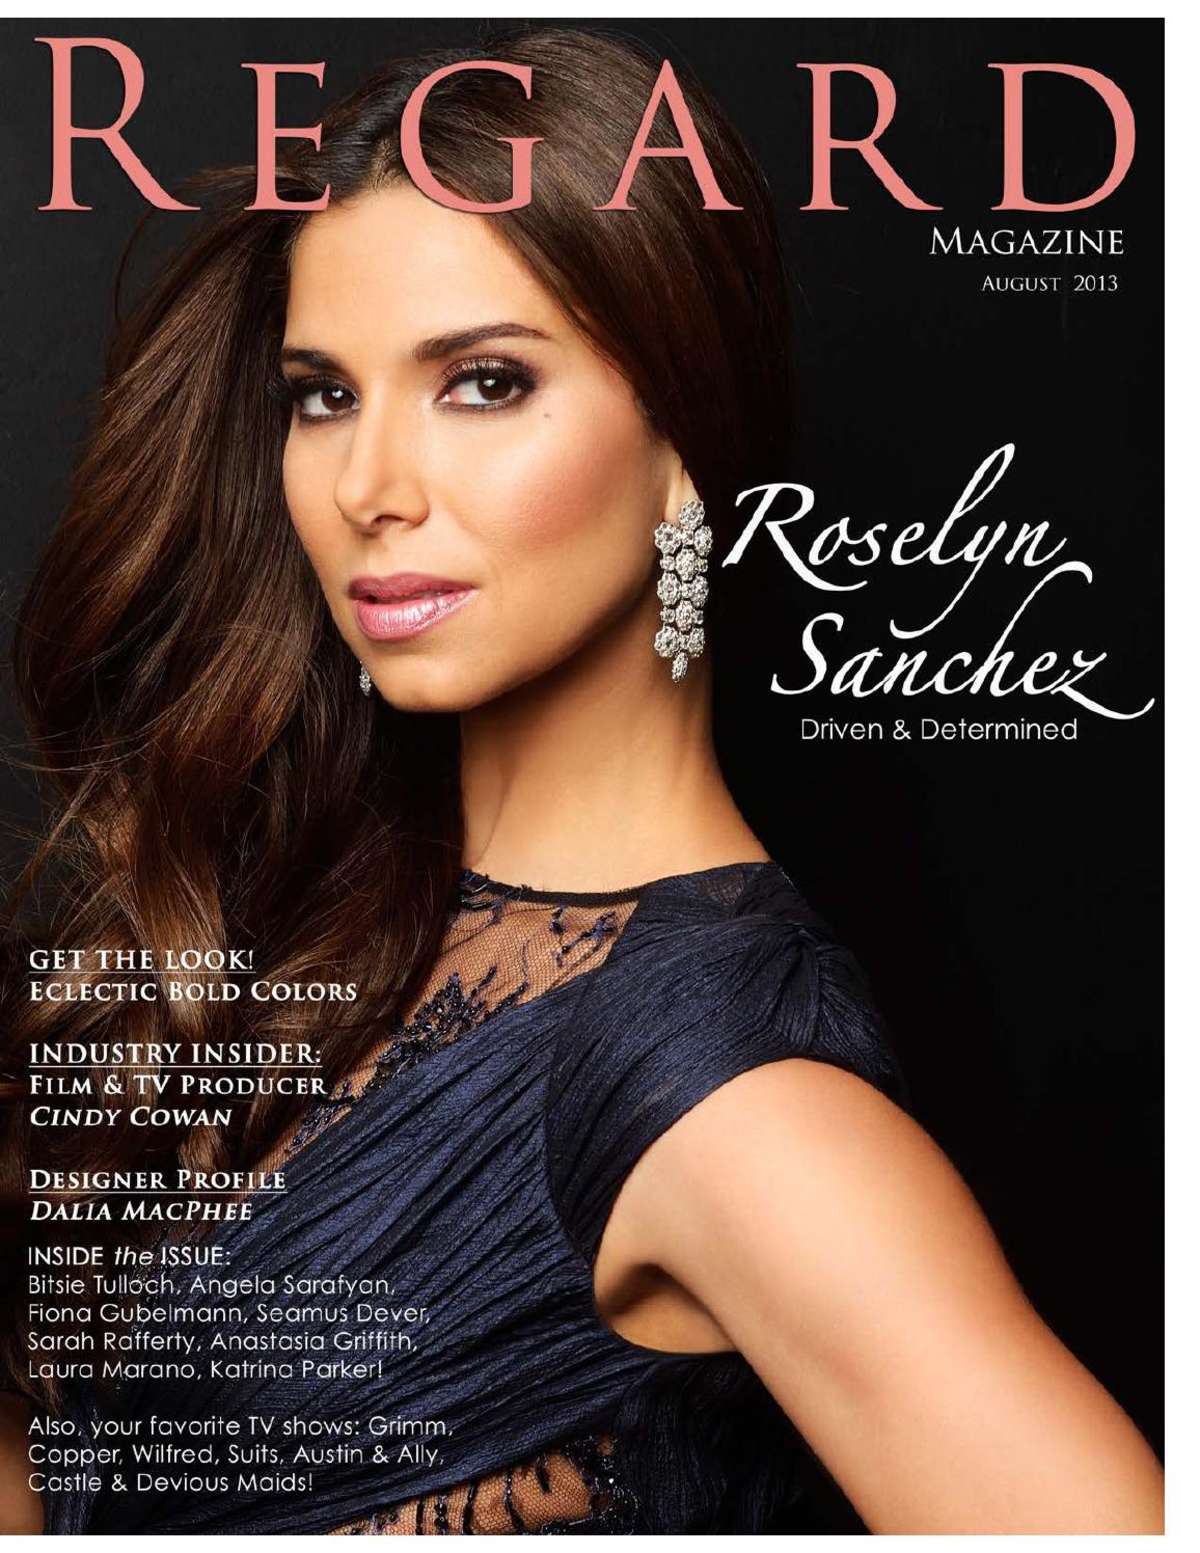 صور روزلين سانشيز على غلاف مجلة Regard 2013